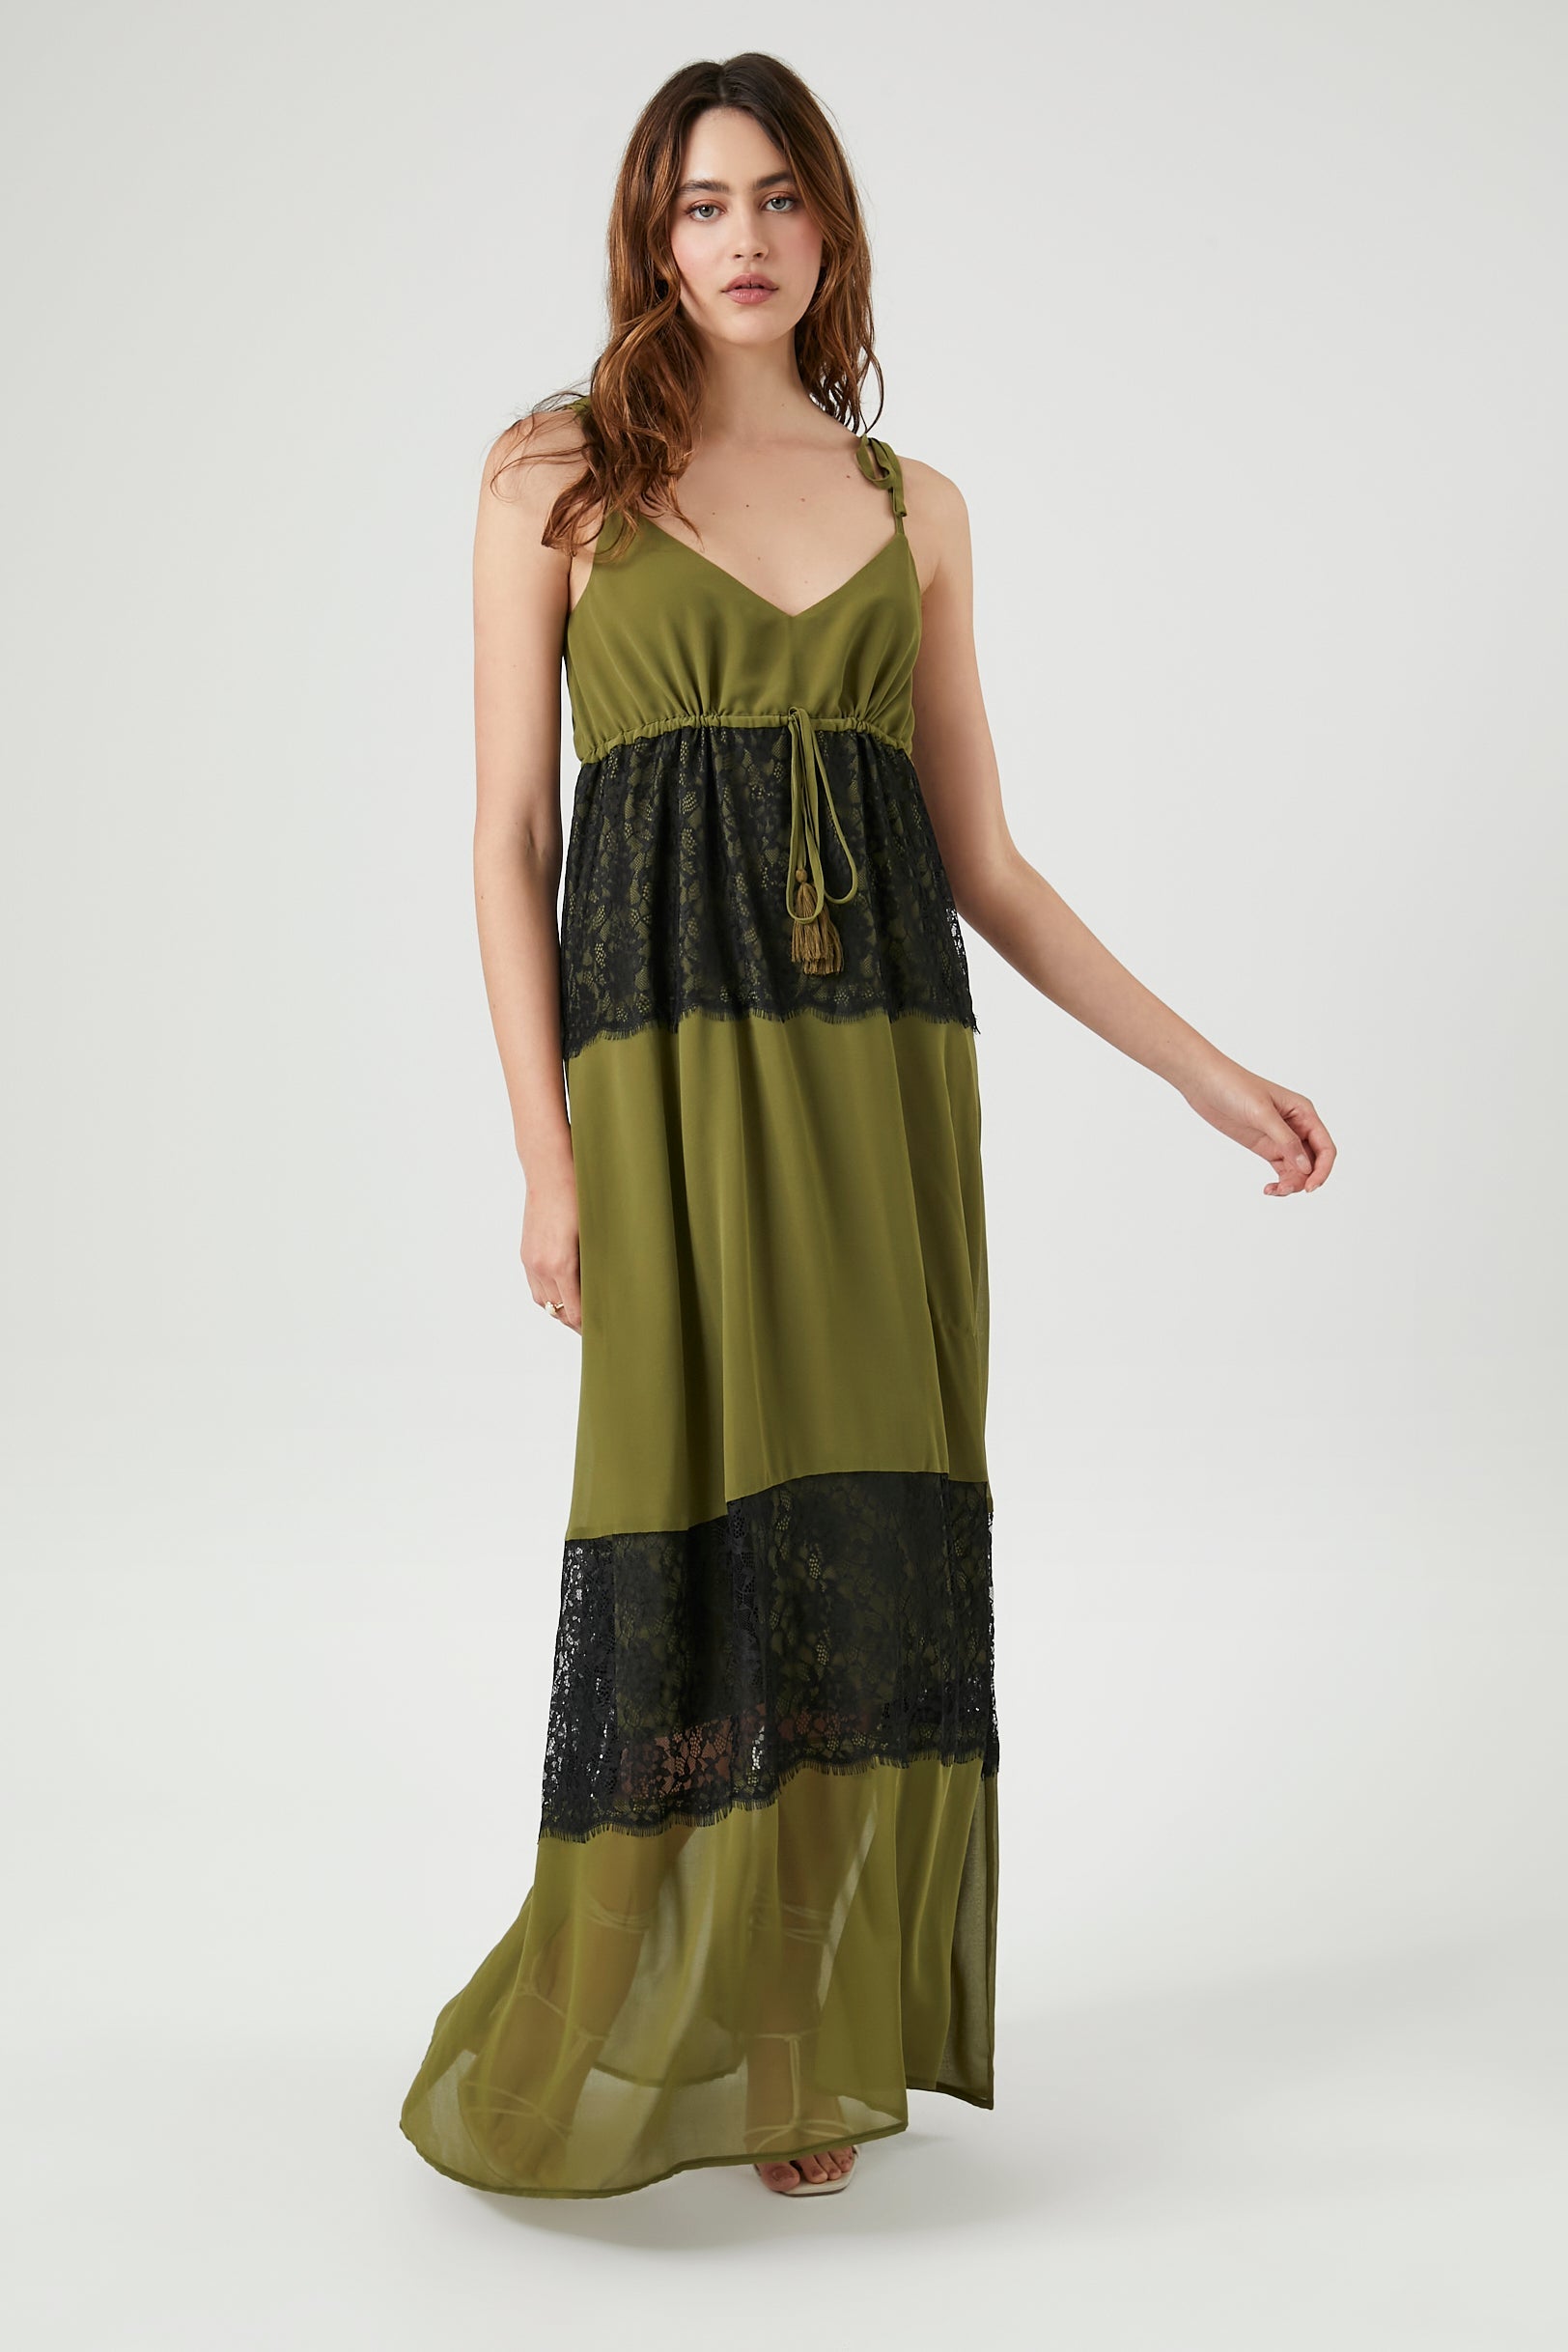 Oliveblack Chiffon Lace-Trim Maxi Dress